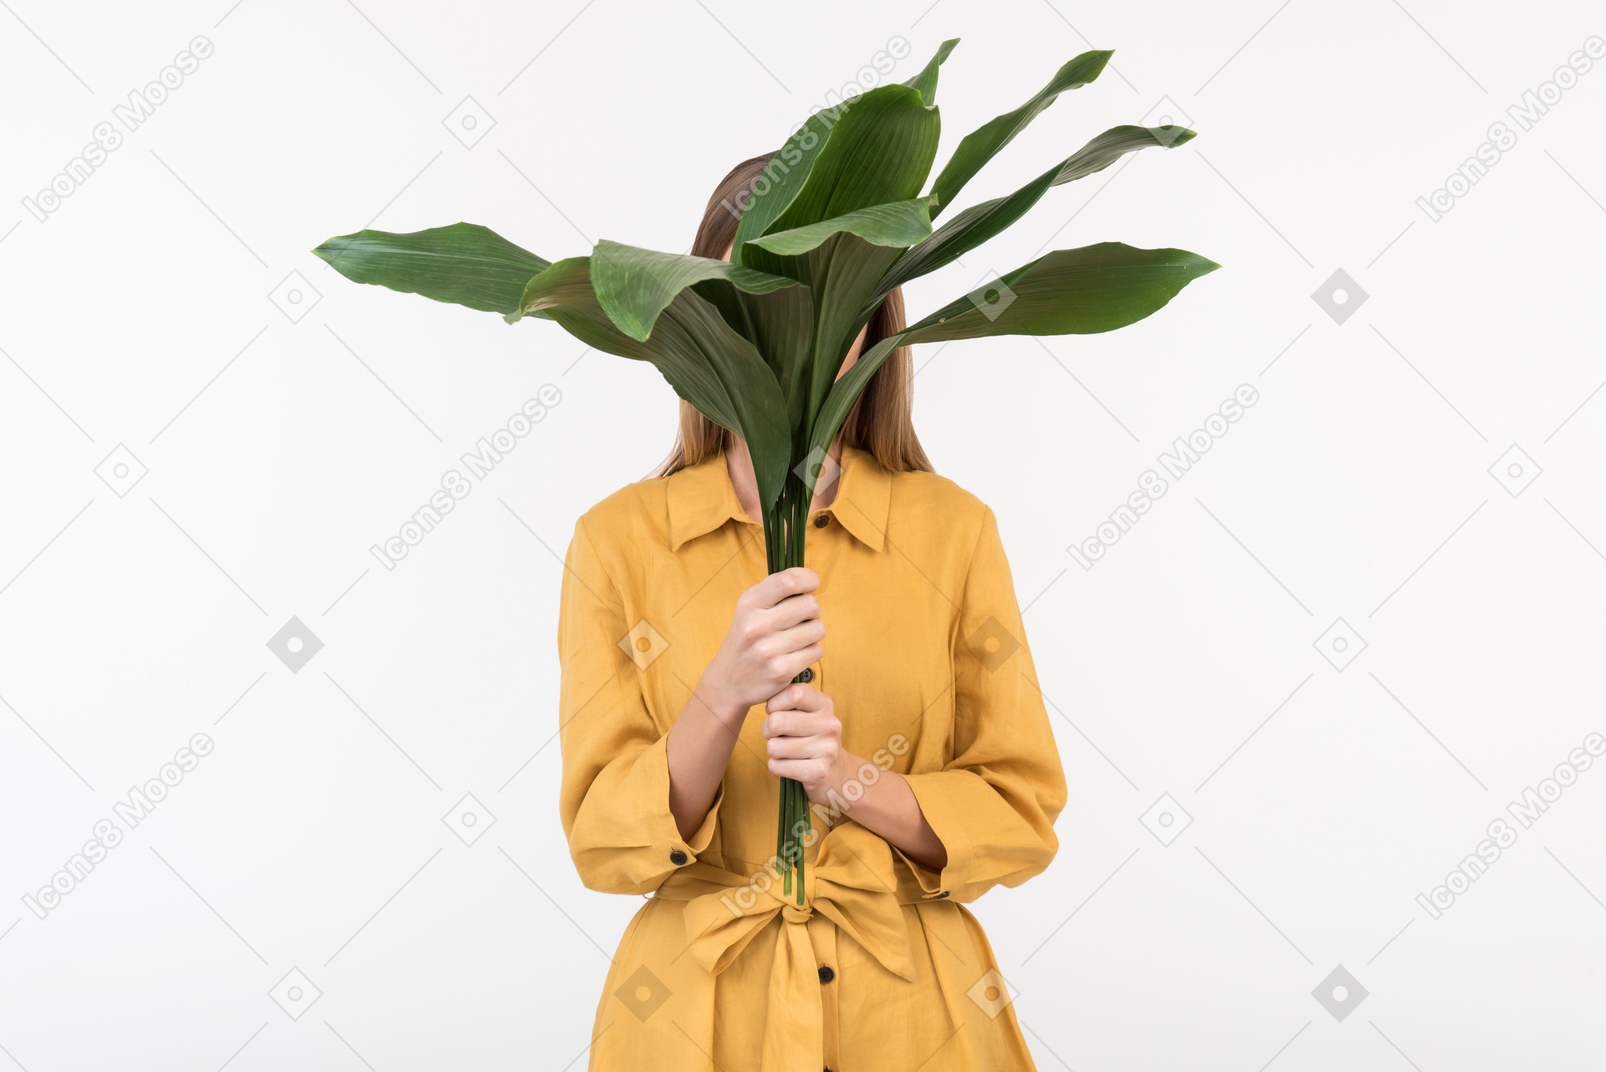 Jeune femme fermant son visage avec de grandes feuilles vertes